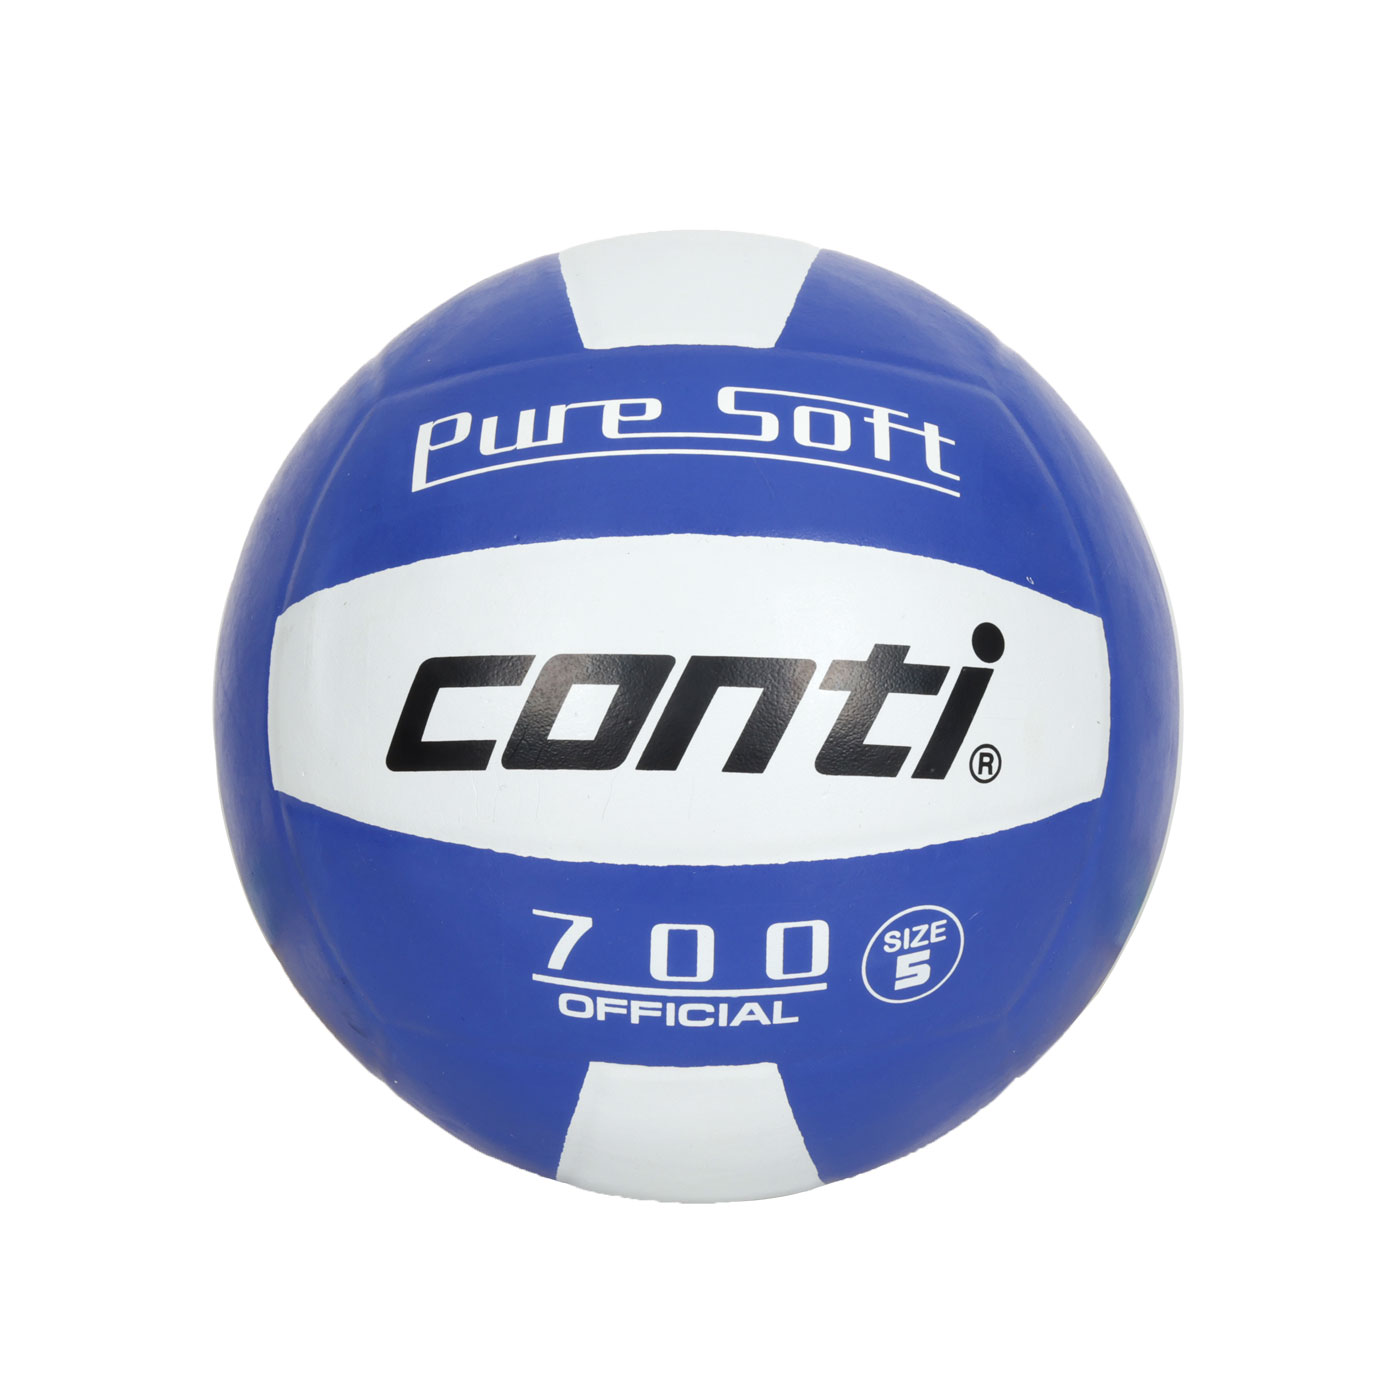 詠冠conti 5號超軟橡膠排球-雙色系列 CONTI V700-5-WB - 藍白